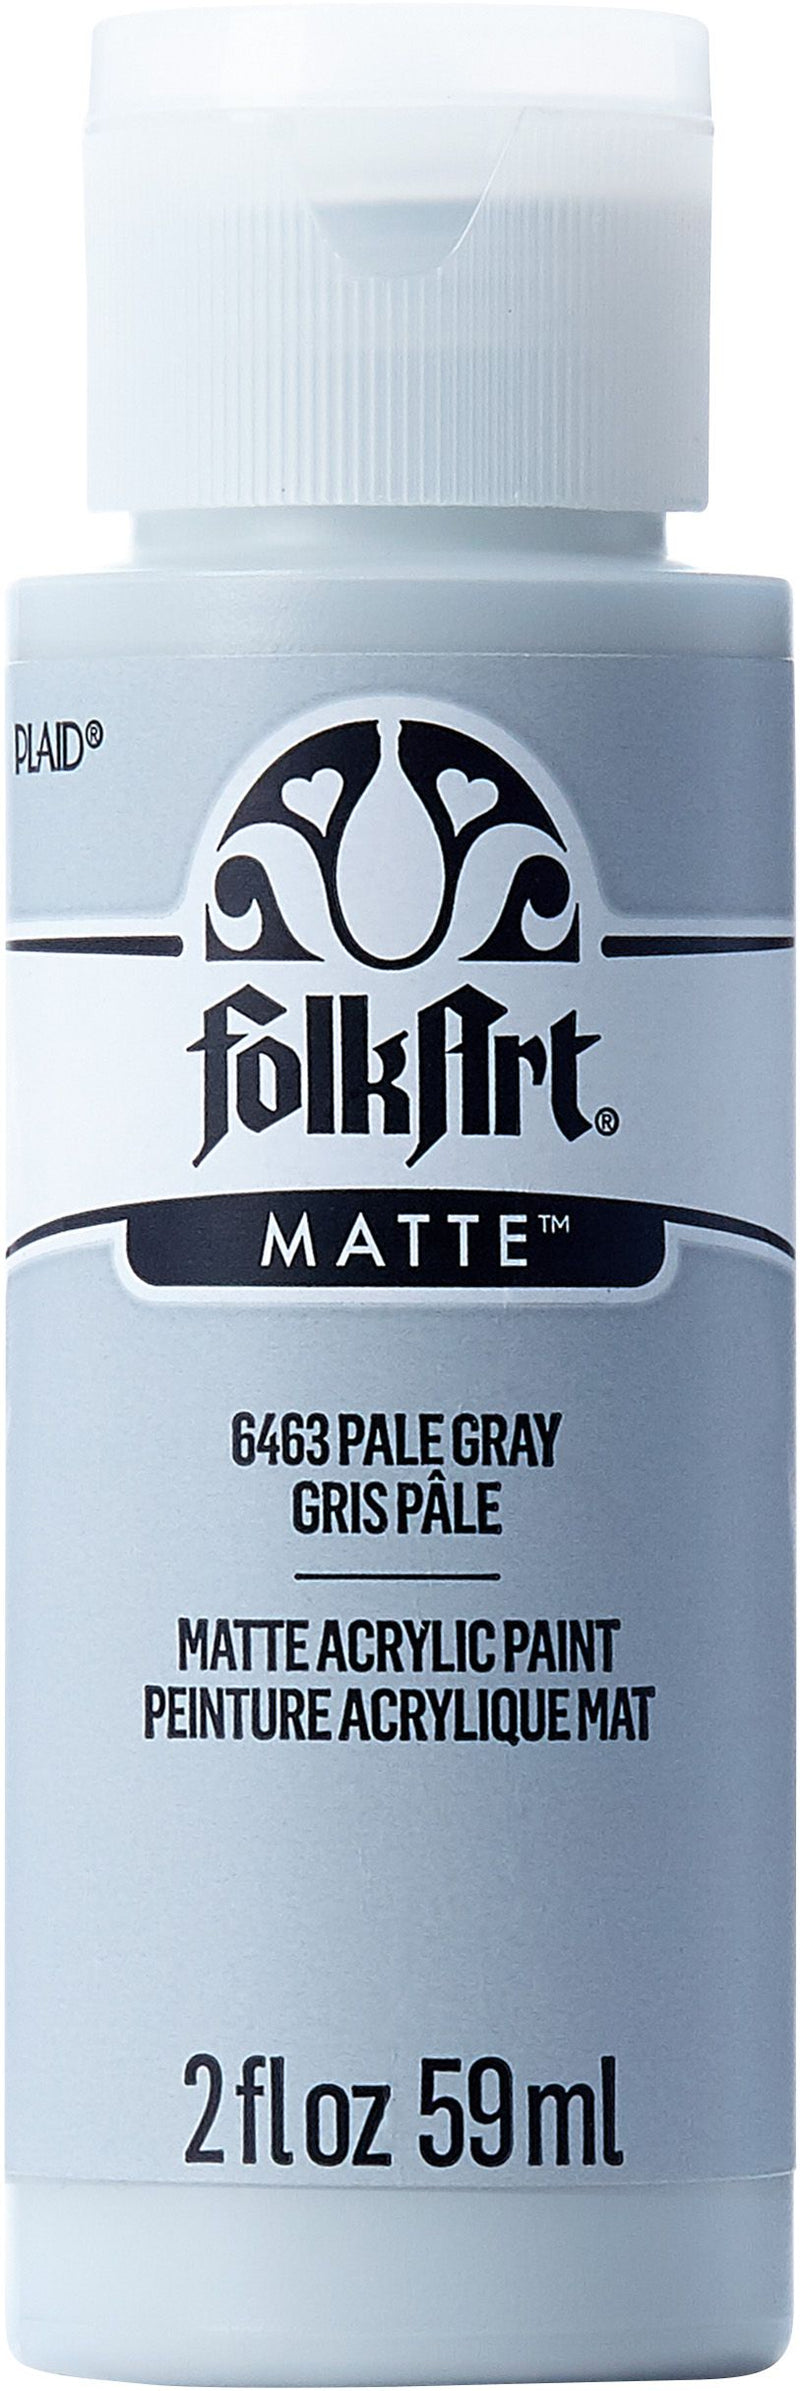 FolkArt Matte Acrylic Paint - Honeycomb, 2 oz, Bottle